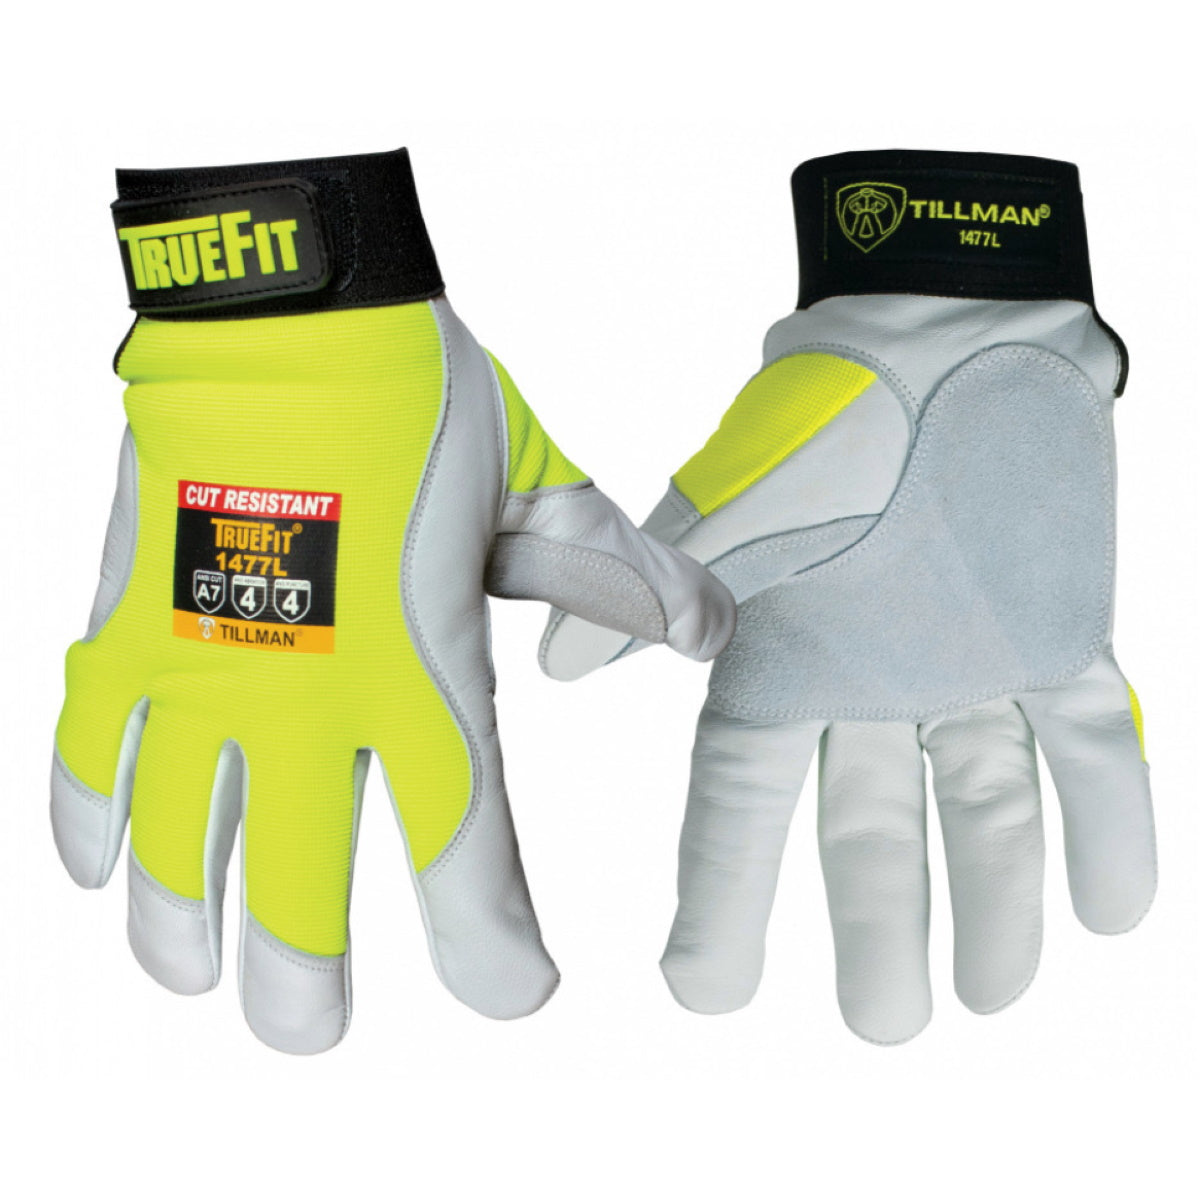 Tillman 1477 TrueFit Mechanic's High-Vis Work Gloves w/A7 Cut Resistance